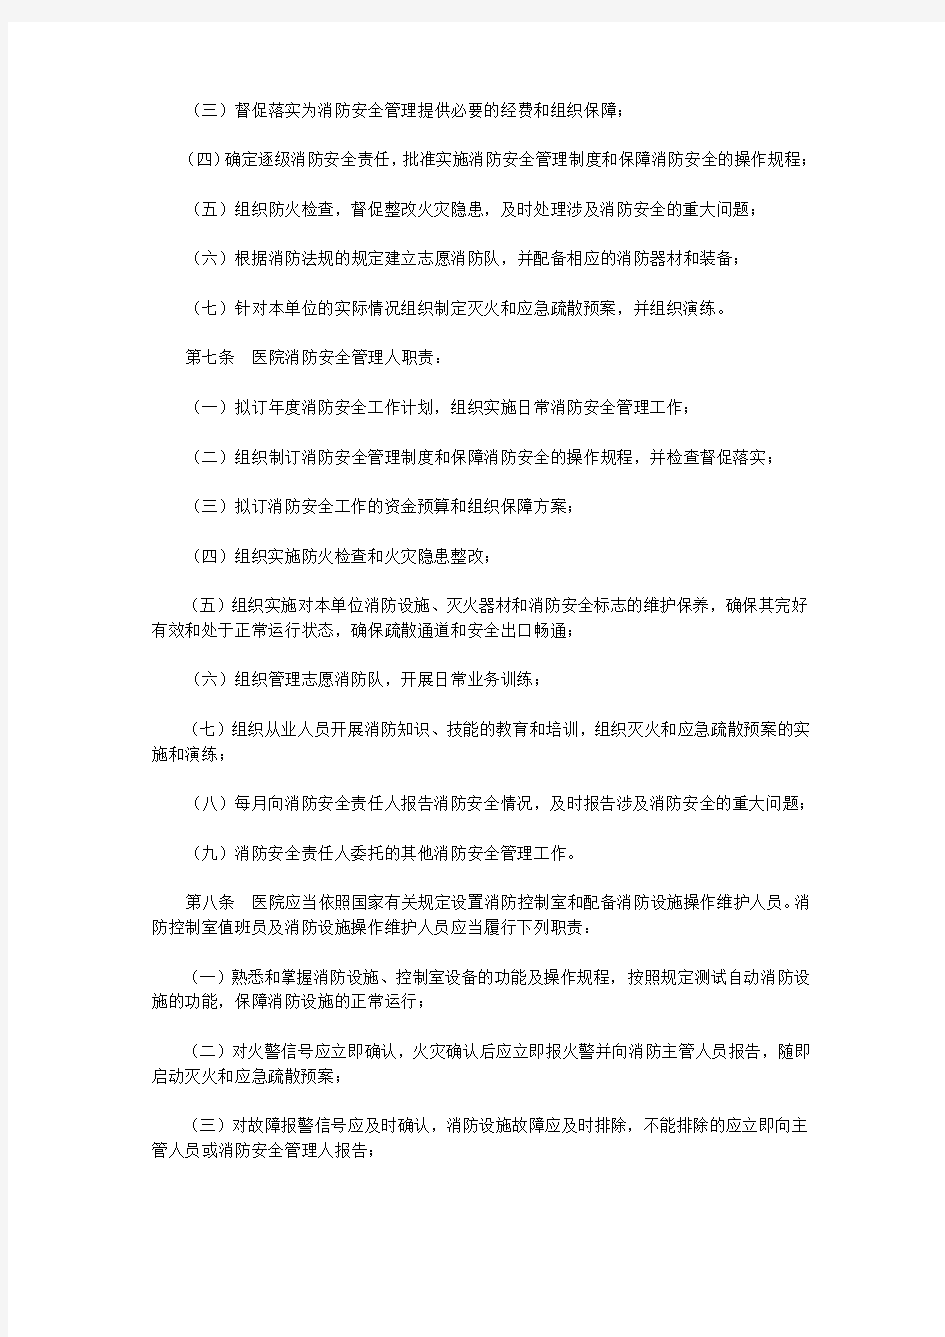 深圳市医院消防安全管理规定